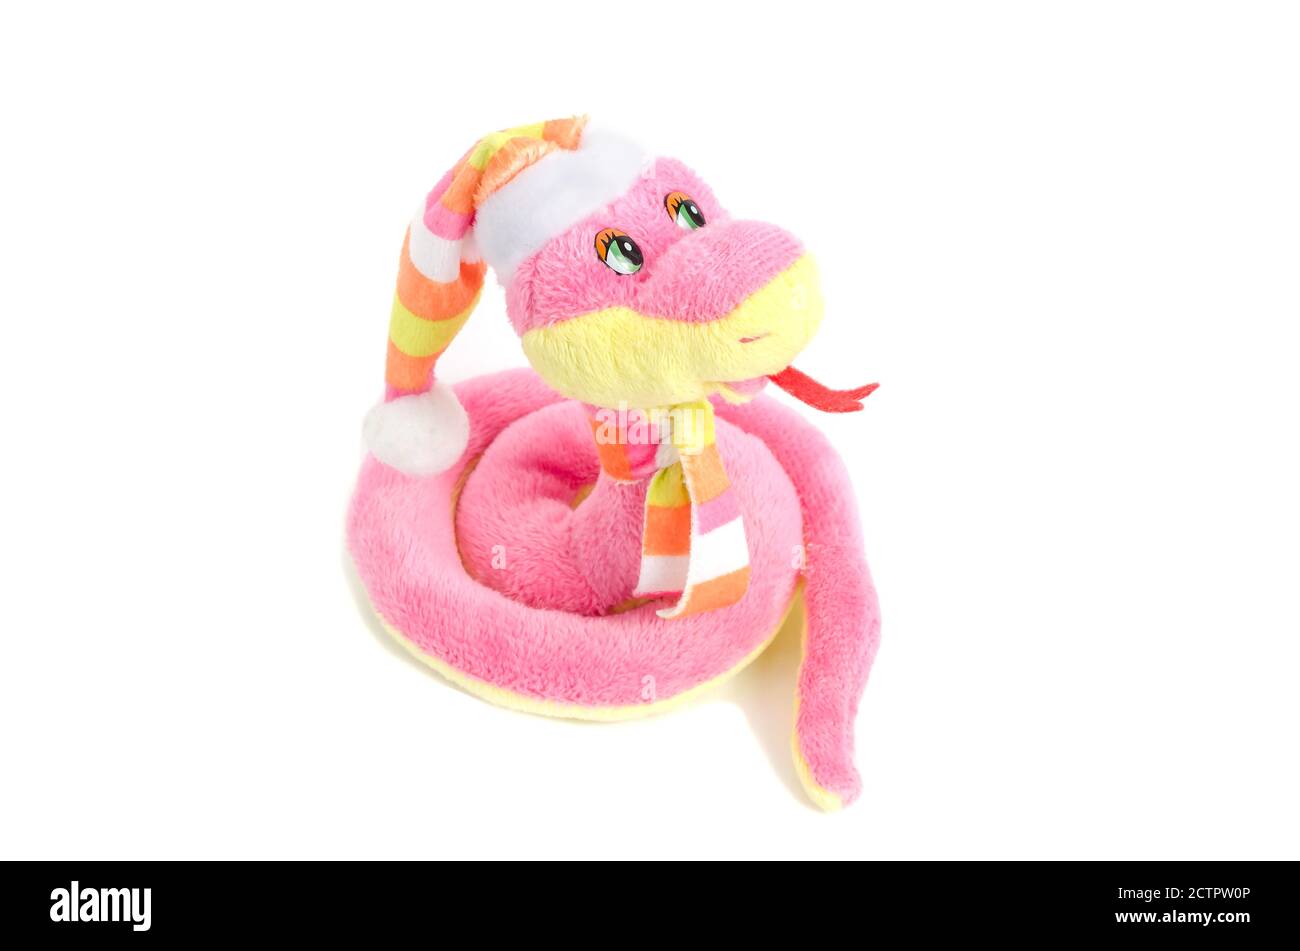 Plush soft toy pink snake isolated on white background Stock Photo